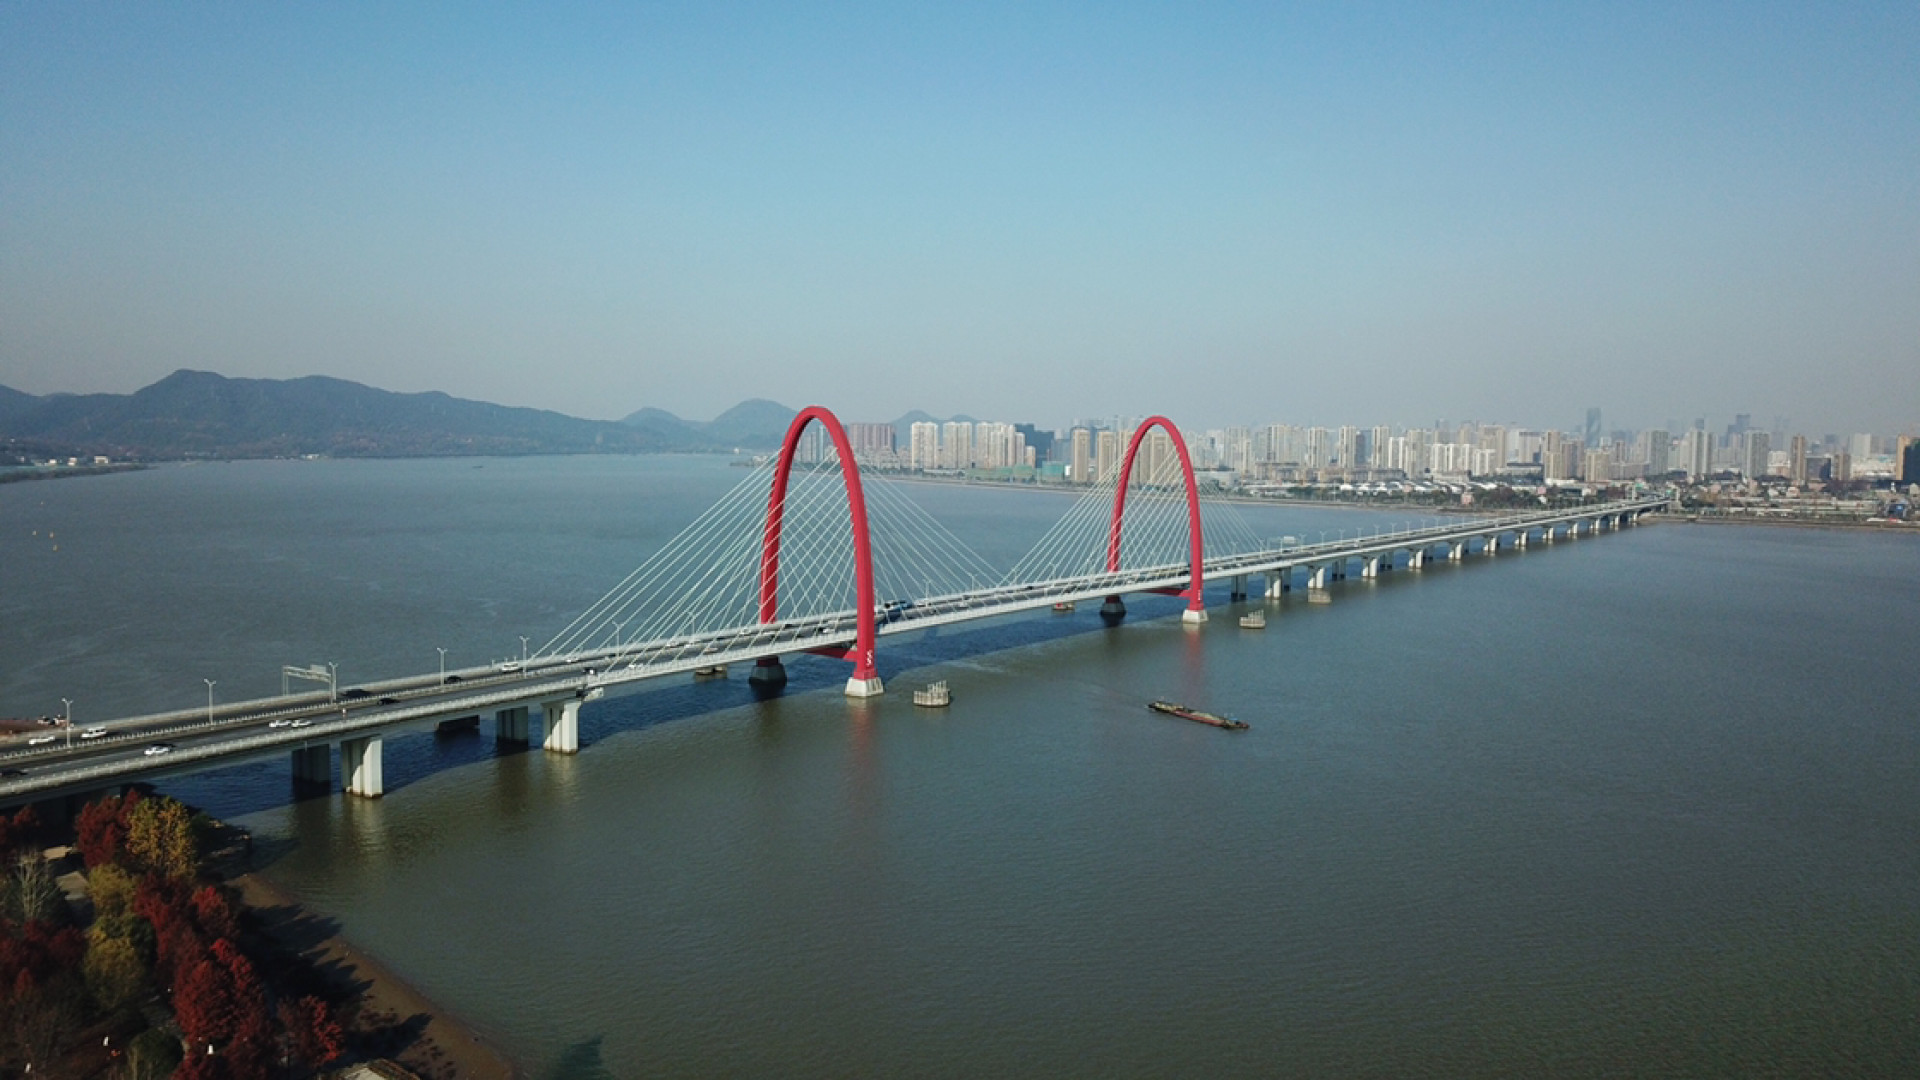 之江大桥,又名钱塘江7号桥,连接杭州西南与滨江区的公路桥